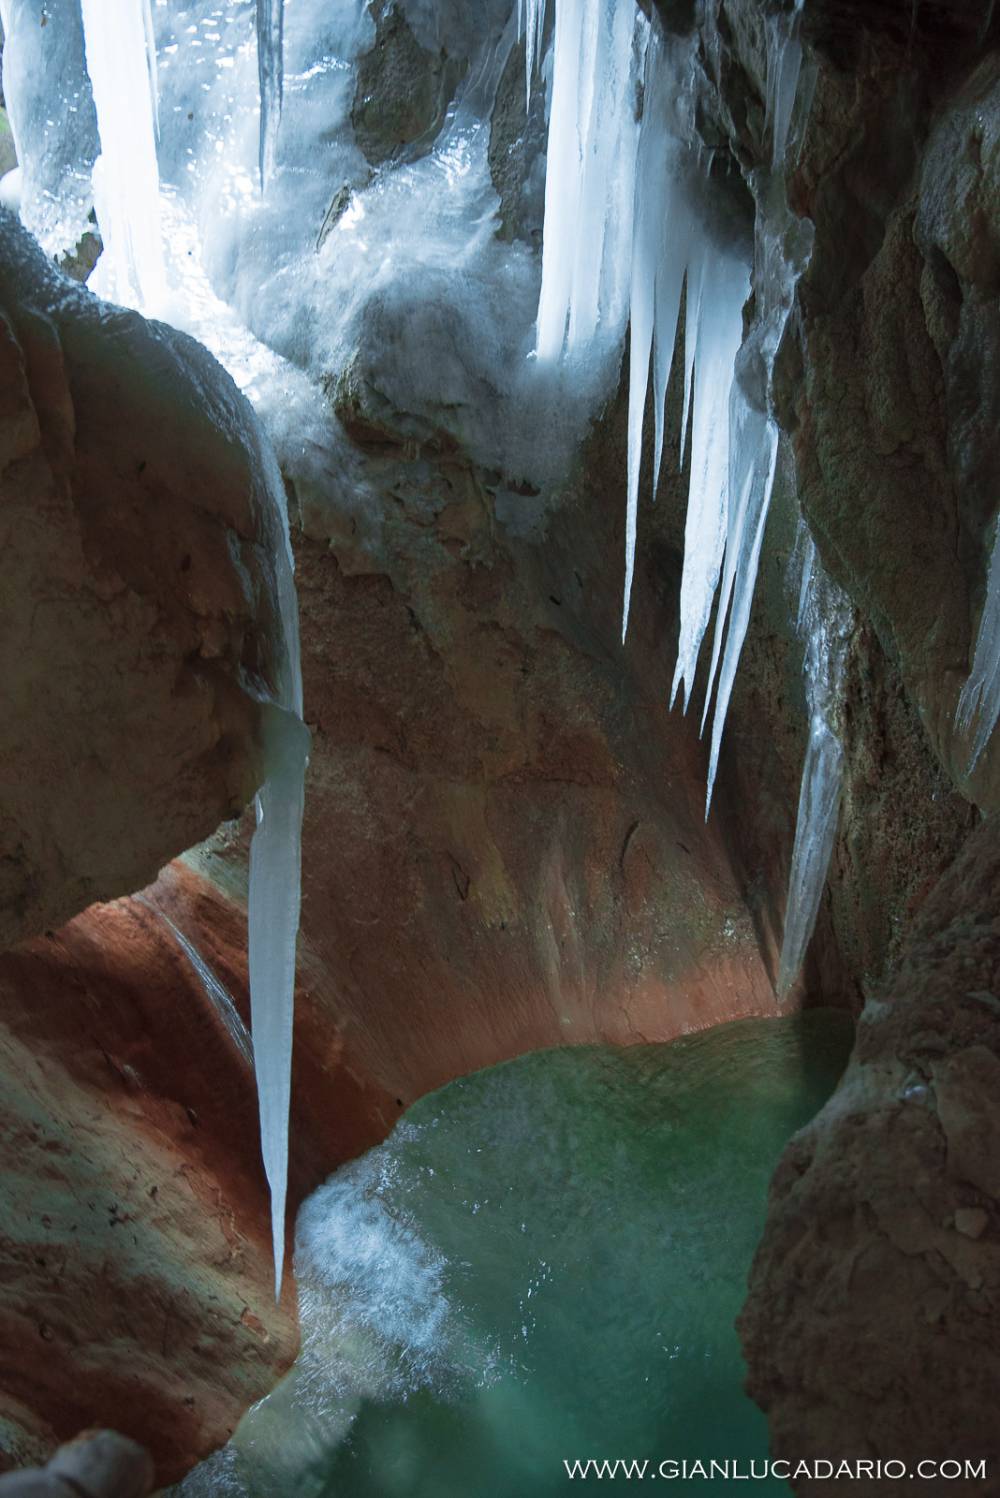 Le grotte del Caglieron in versione invernale - foto 19 - Gianluca Dario Photography